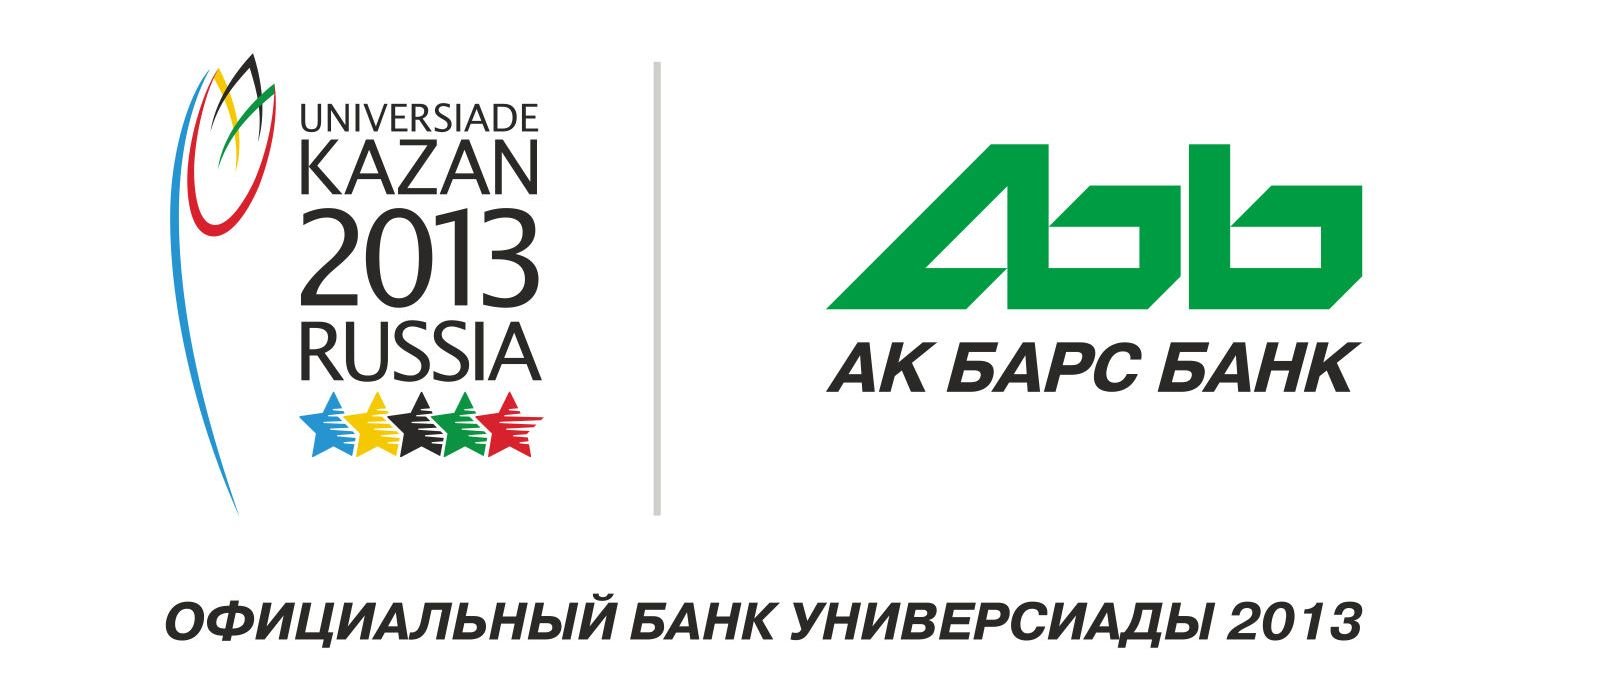 Ак барс банк новосибирск. АК Барс банк логотип. Старый логотип АК Барс банка. Банк АК Барс в Новосибирске. АК Барс банк Саратов.